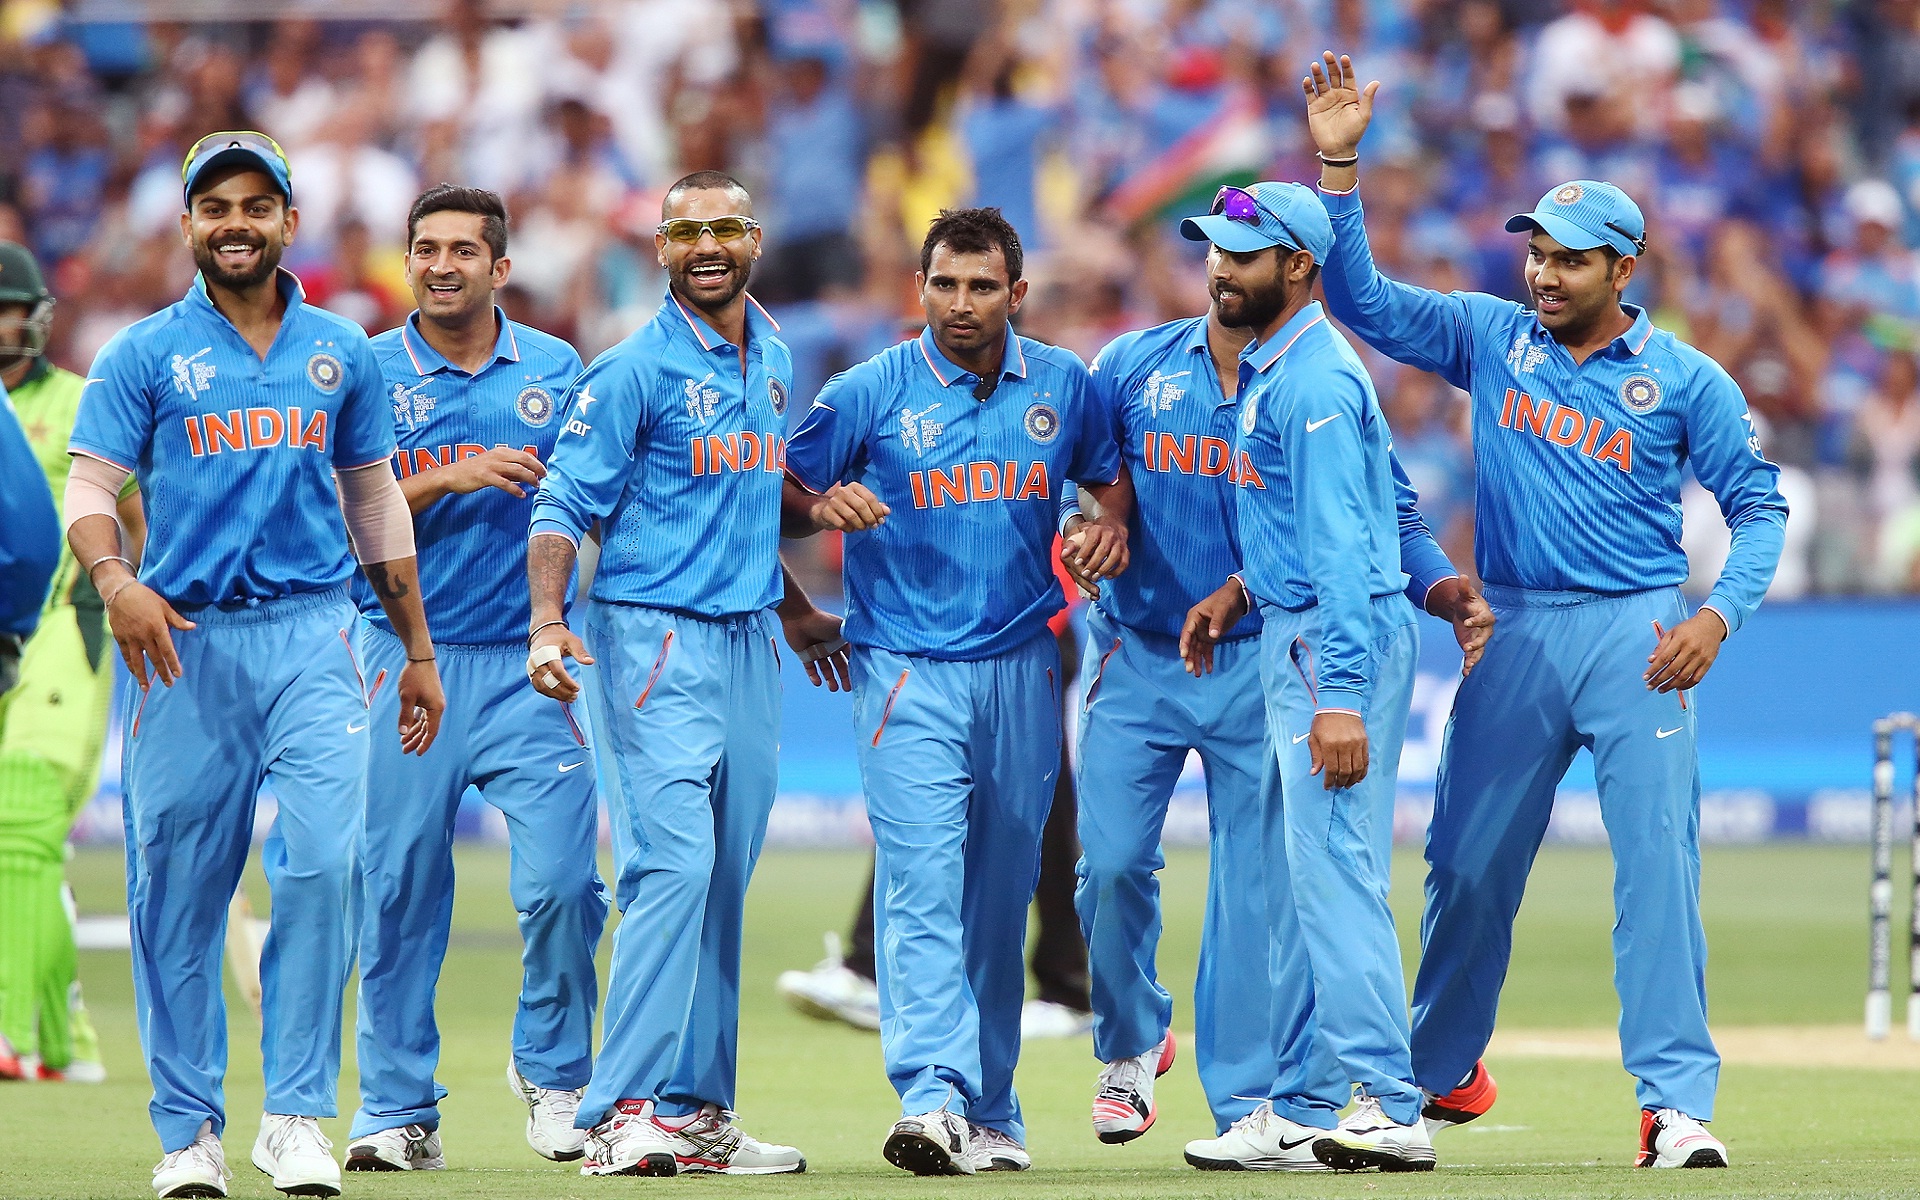 RECORDS: टीम इण्डिया के रणबांकुरे आज बना सकते है श्रीलंका के खिलाफ ये 5 बड़े रिकार्ड्स 3